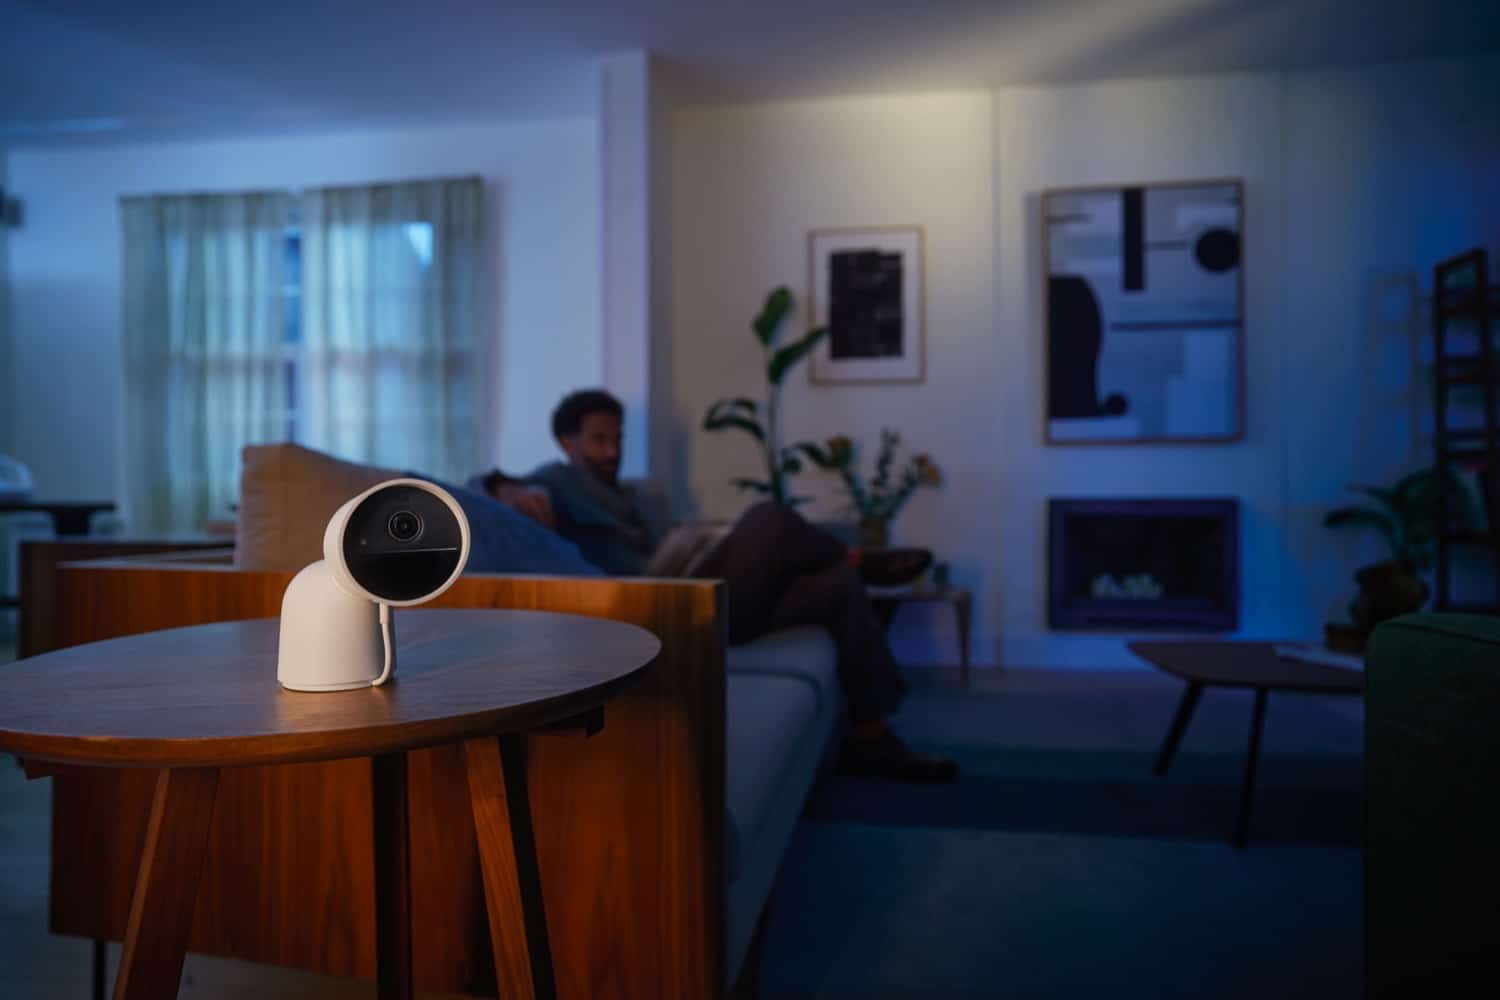 Hueblog: Philips Hue smart home cameras officially announced